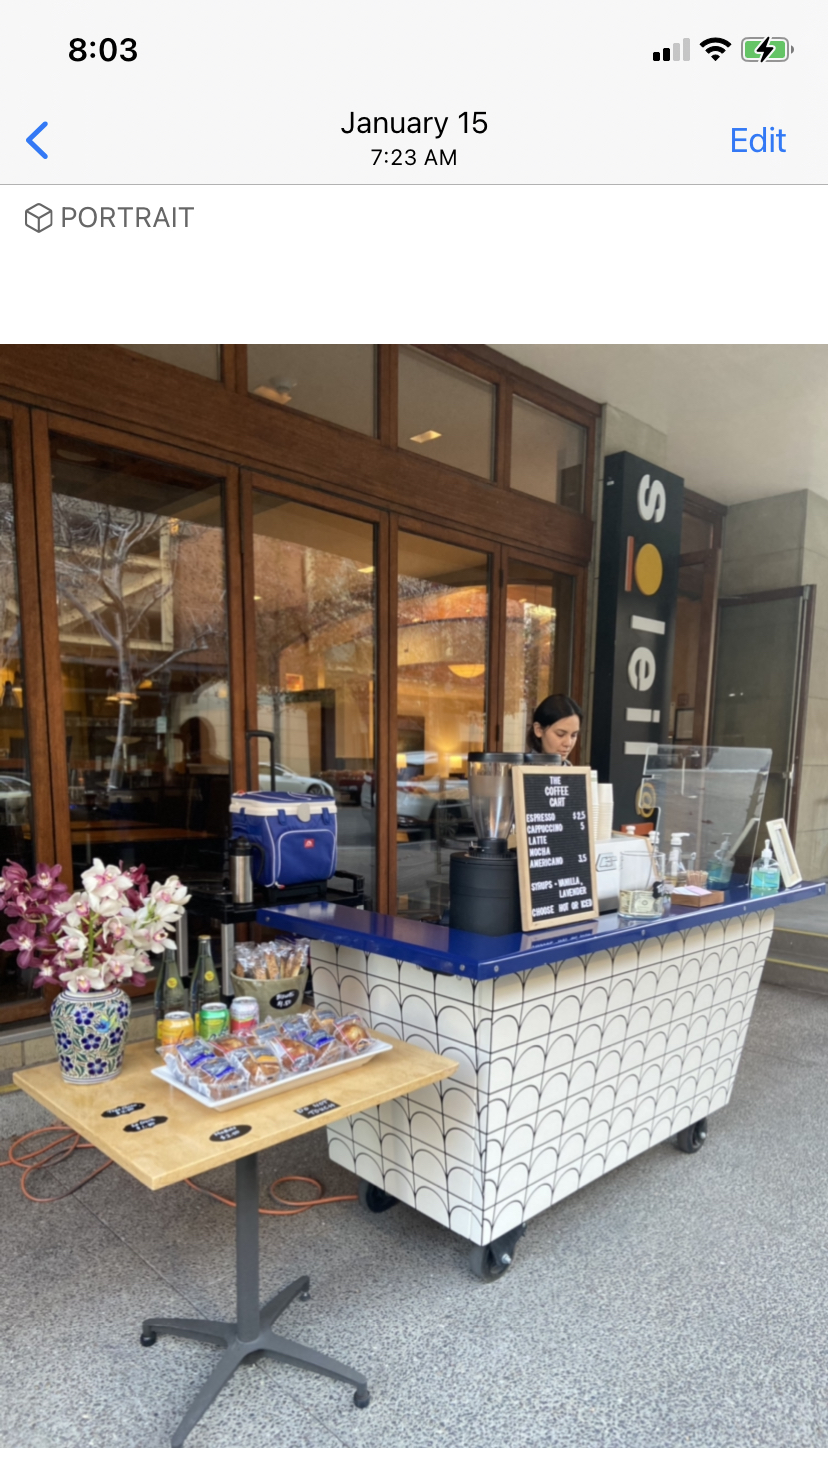 The Coffee Cart Café & Espresso Catering